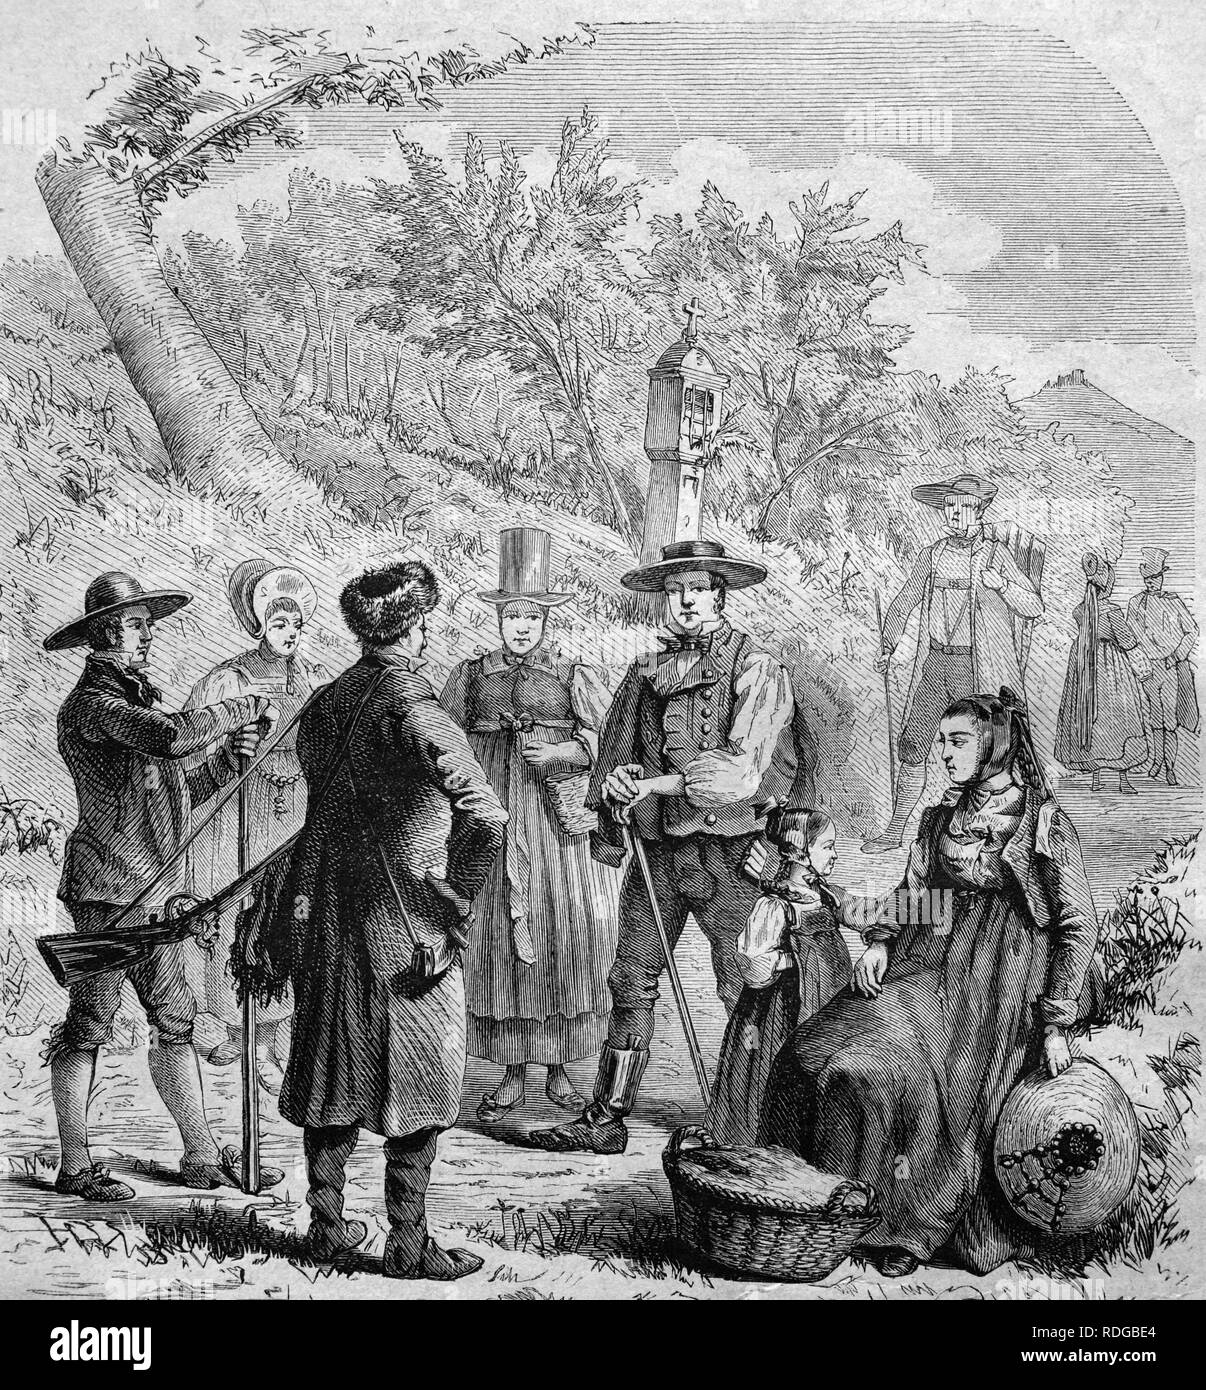 Les résidents de la Forêt Noire le port des costumes traditionnels, l'Allemagne, l'illustration historique, 1877 Banque D'Images